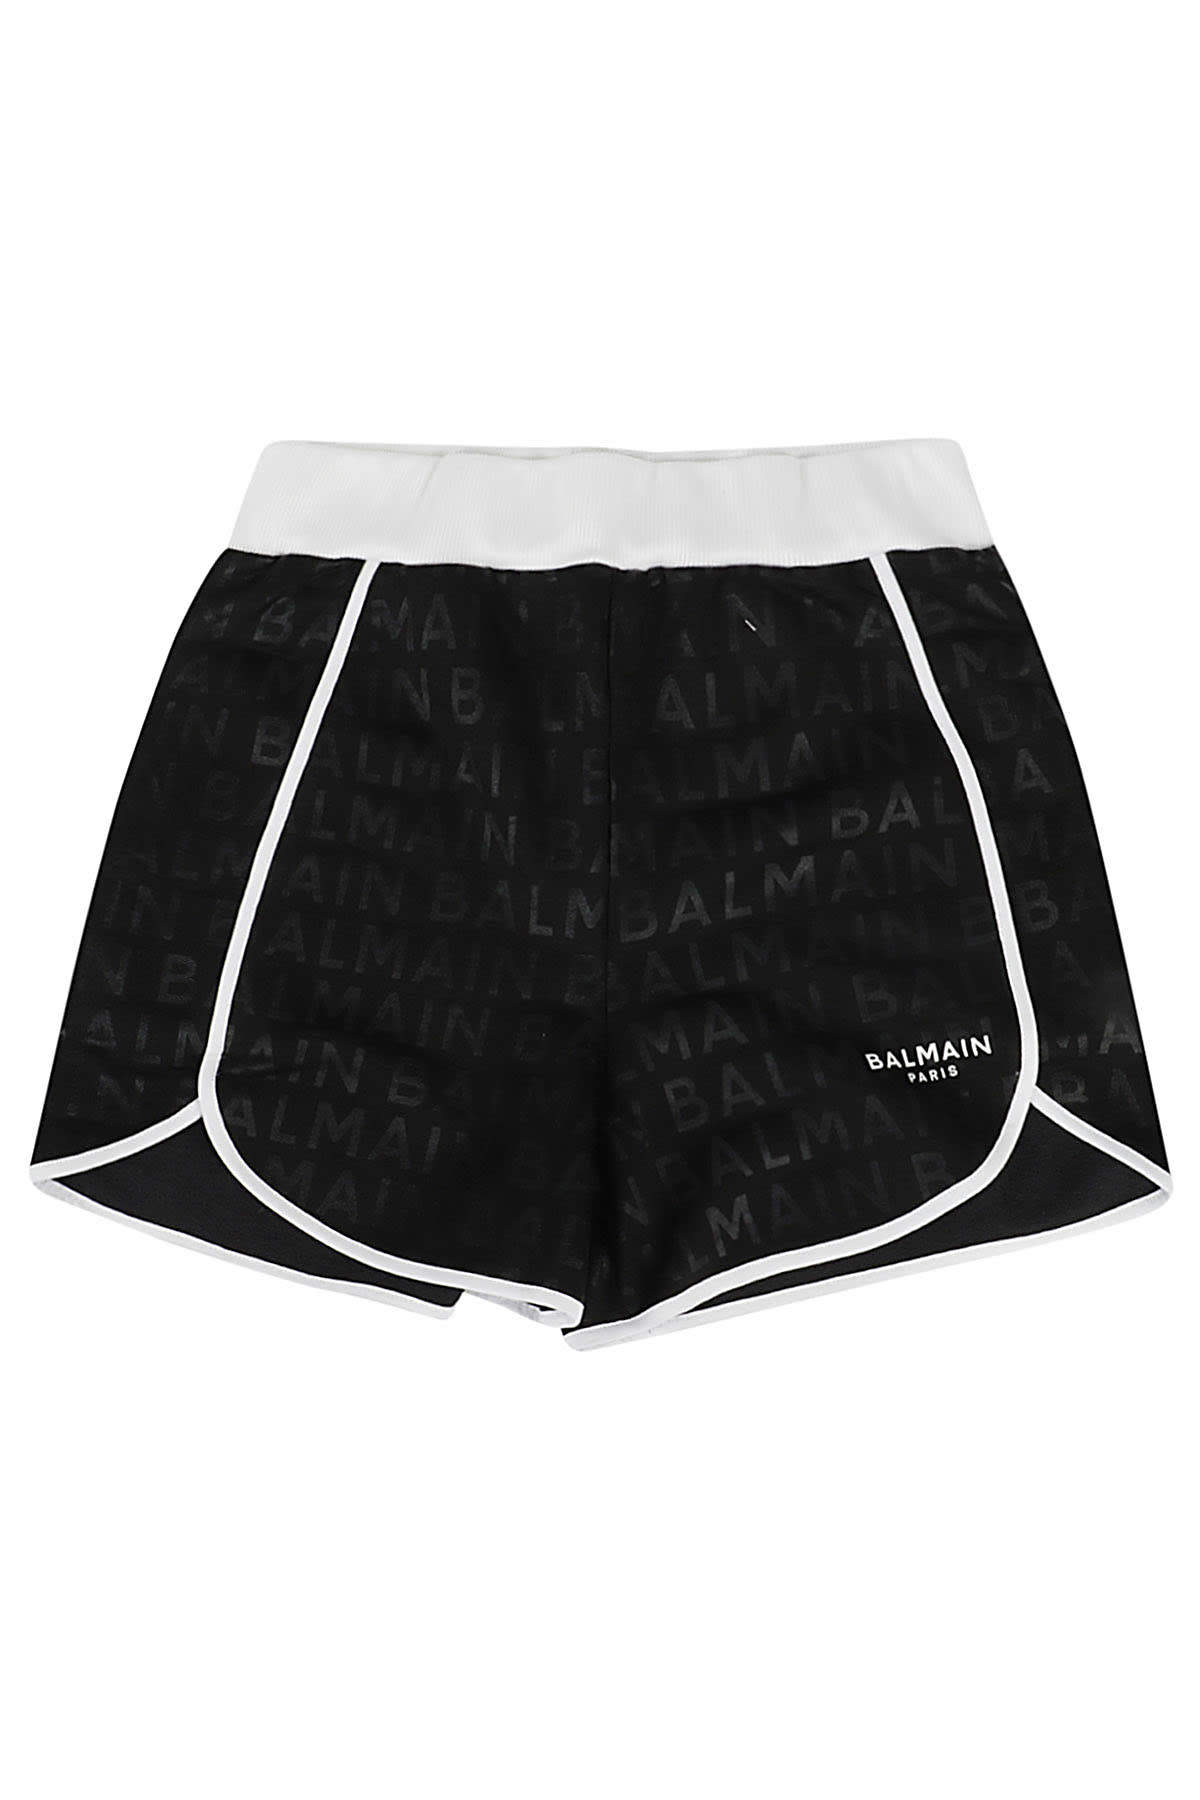 Balmain Jersey Shorts